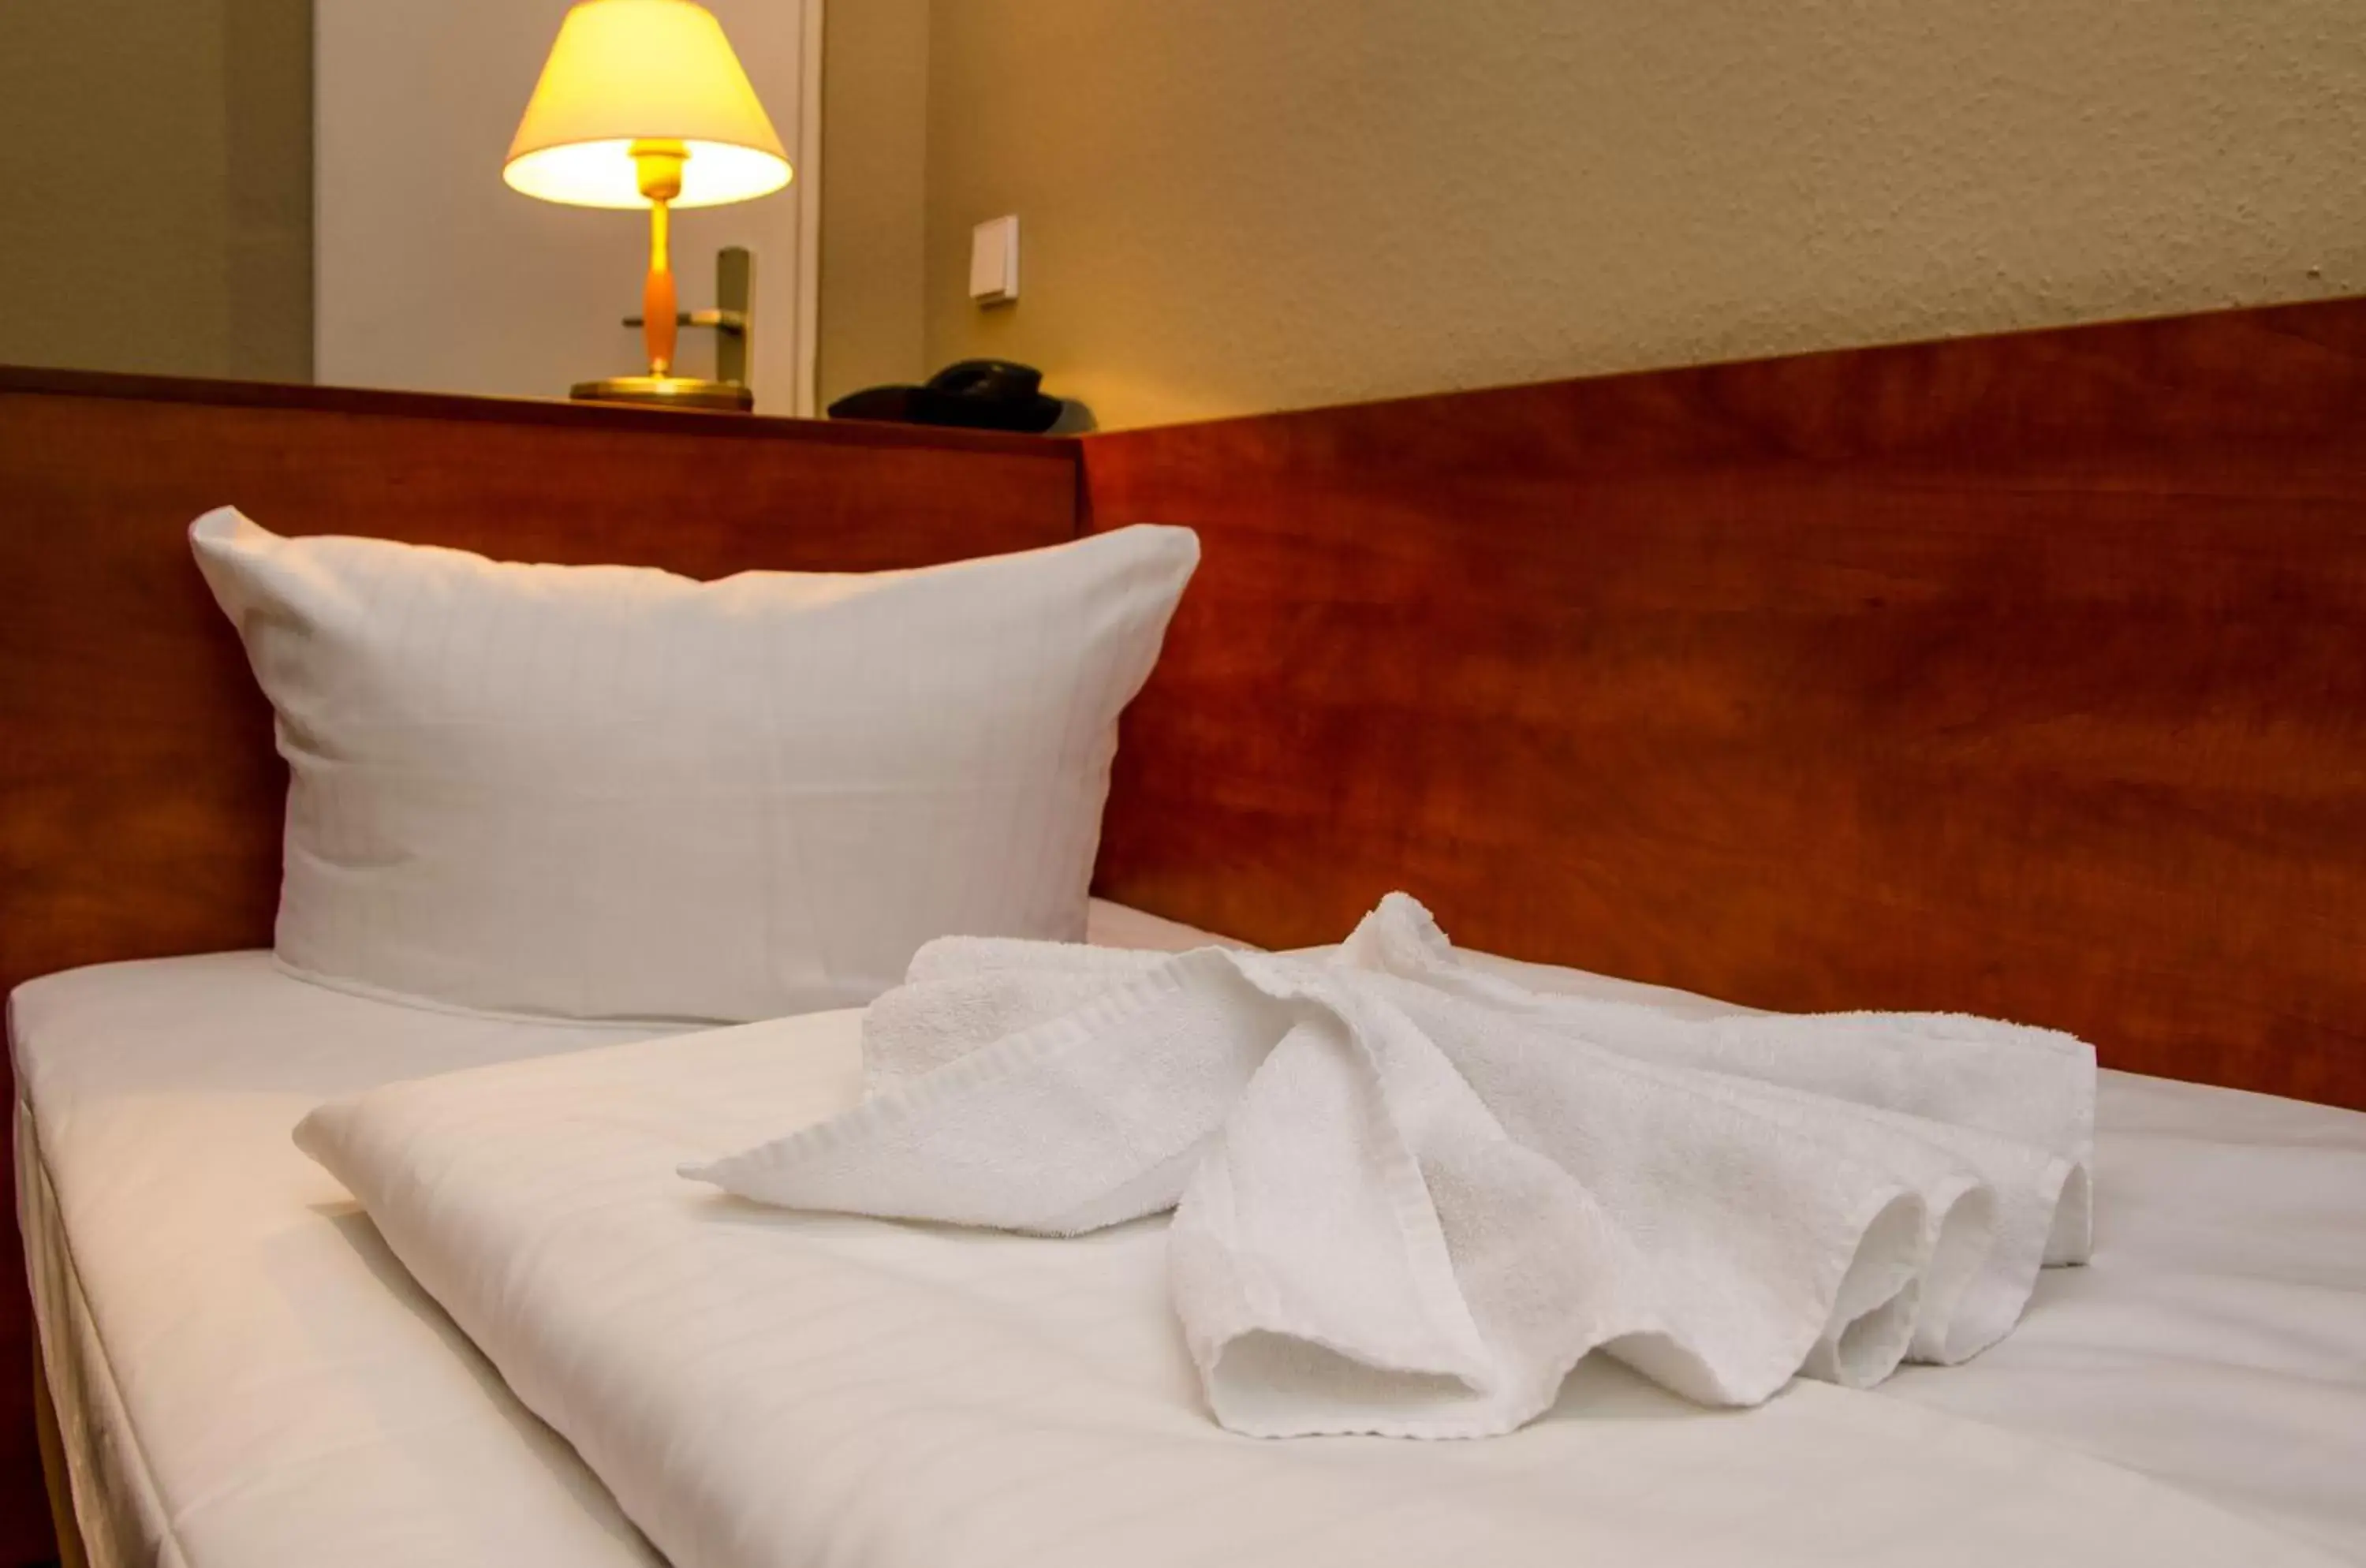 Bed in Hotel Astrid am Kurfürstendamm